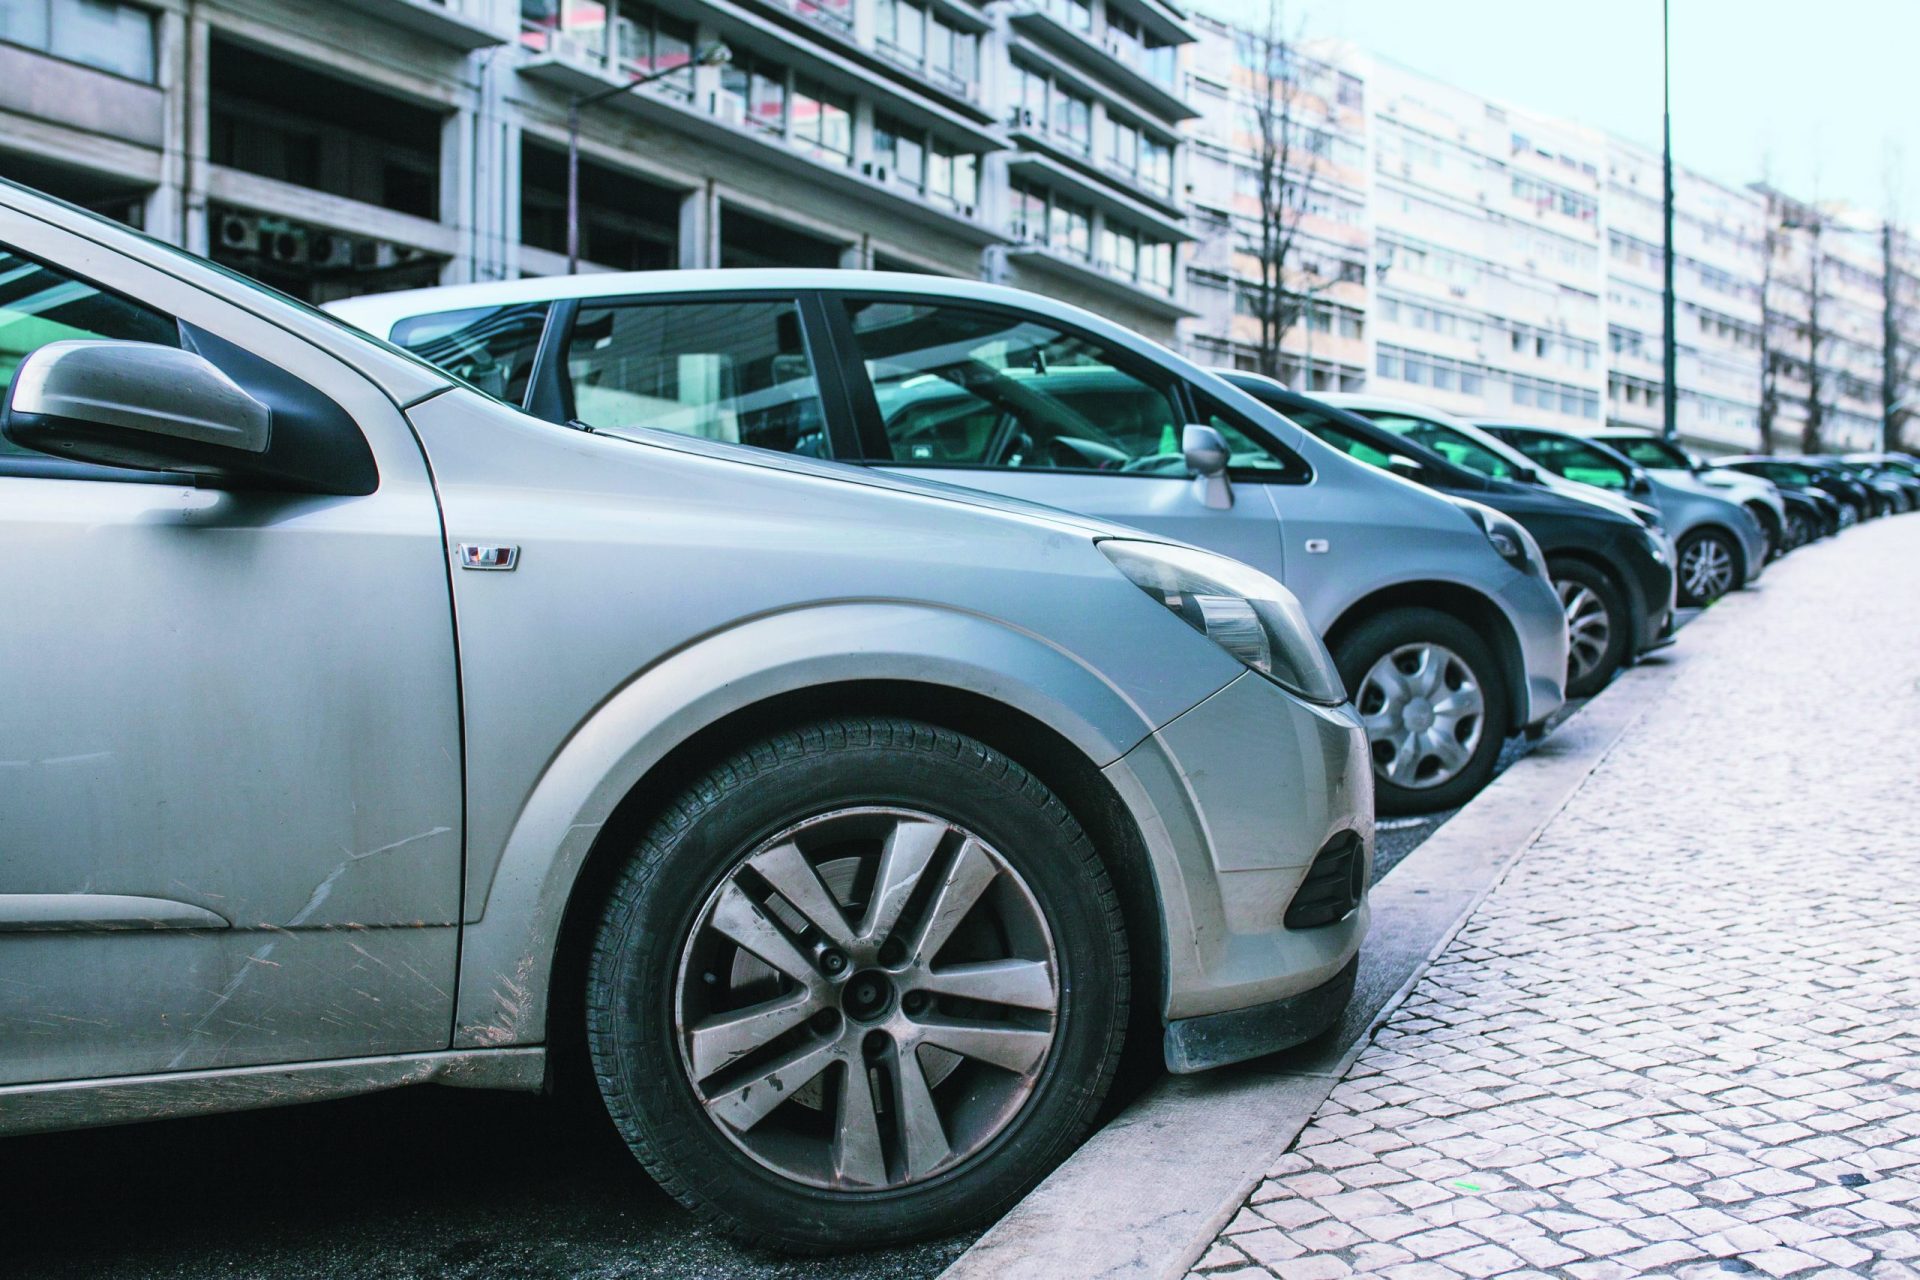 Em média, são assaltados 267 carros por mês em Lisboa